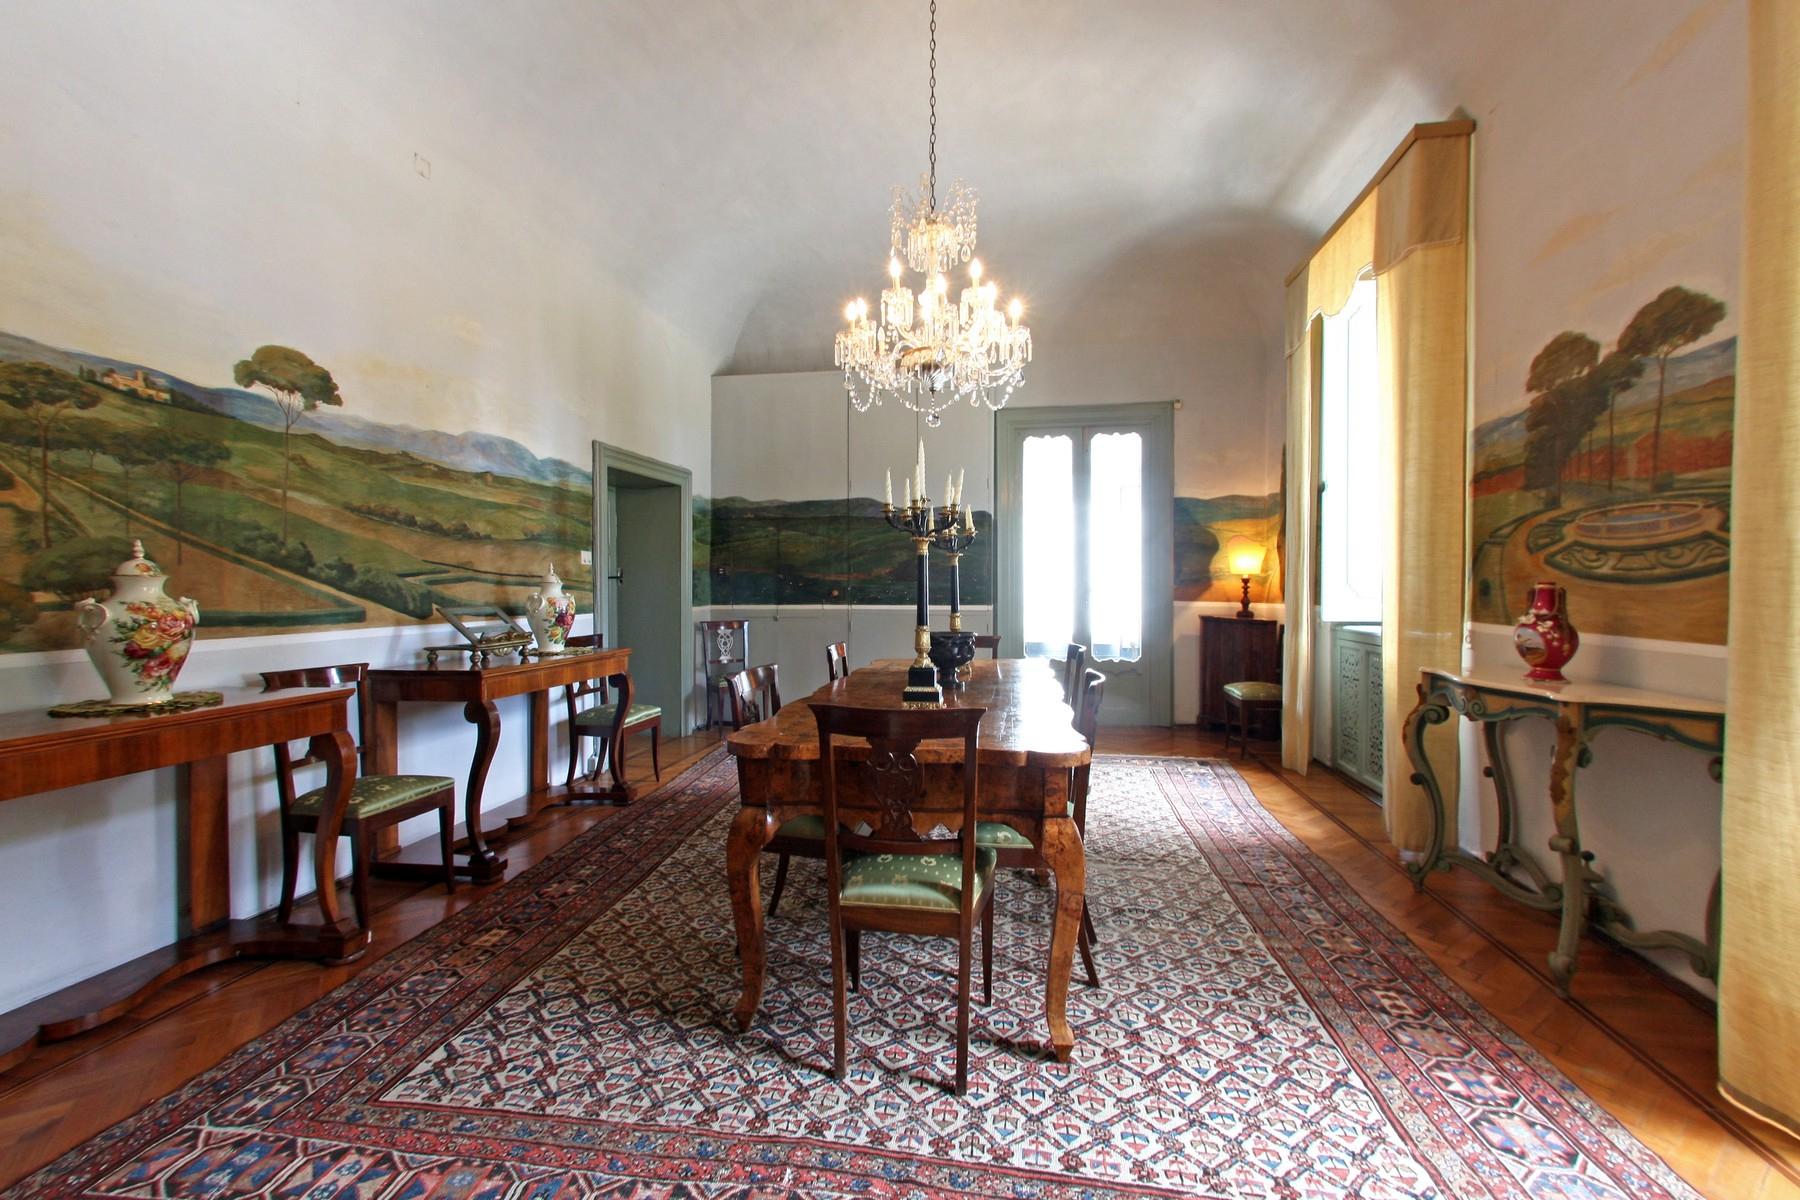 Magnifica Villa storica con giardino all' italiana in Umbria - 32